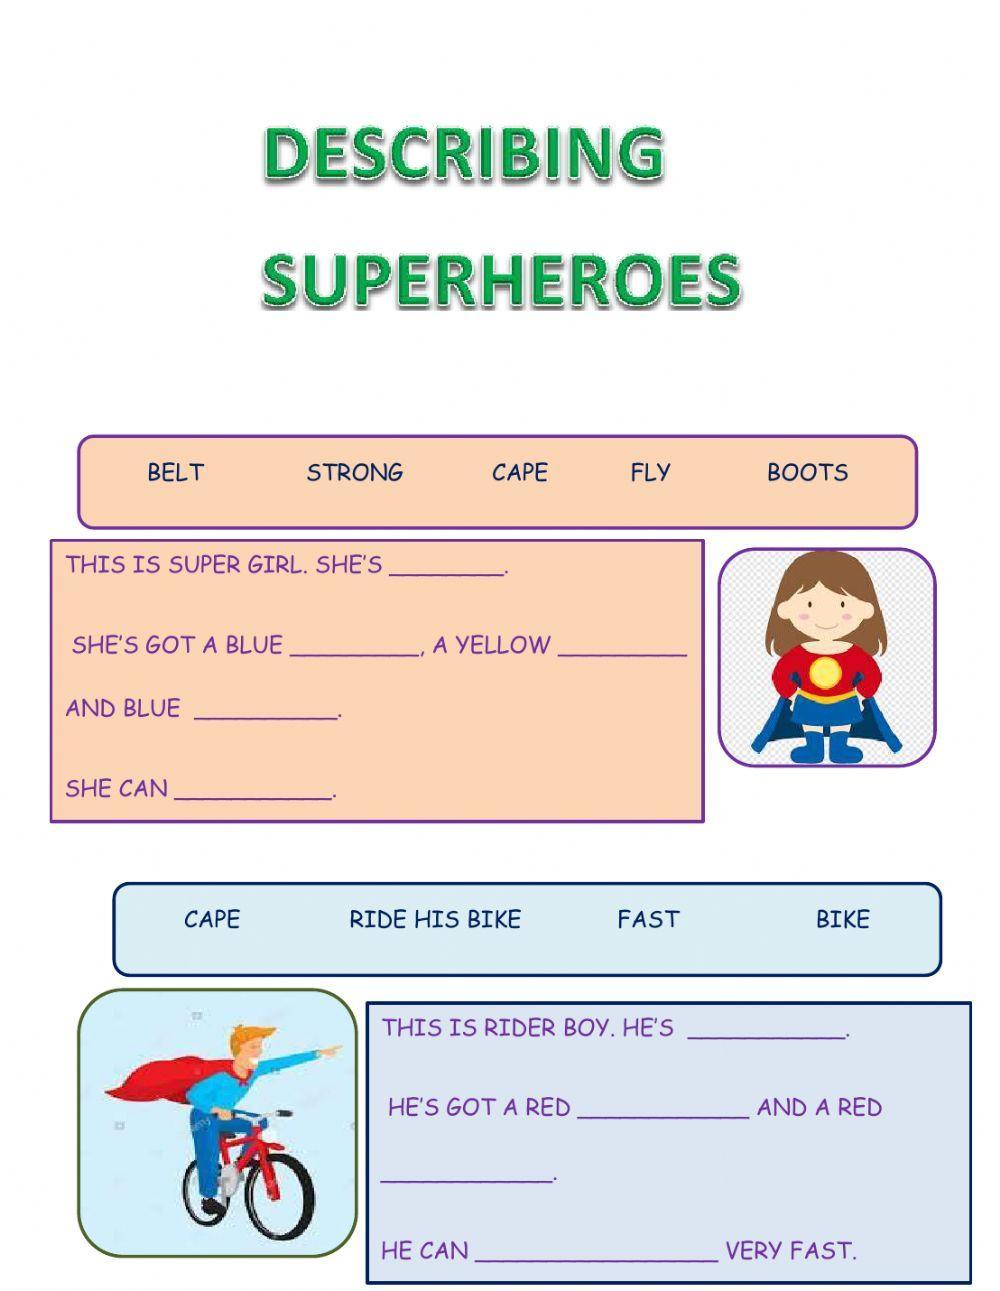 Describing superheroes